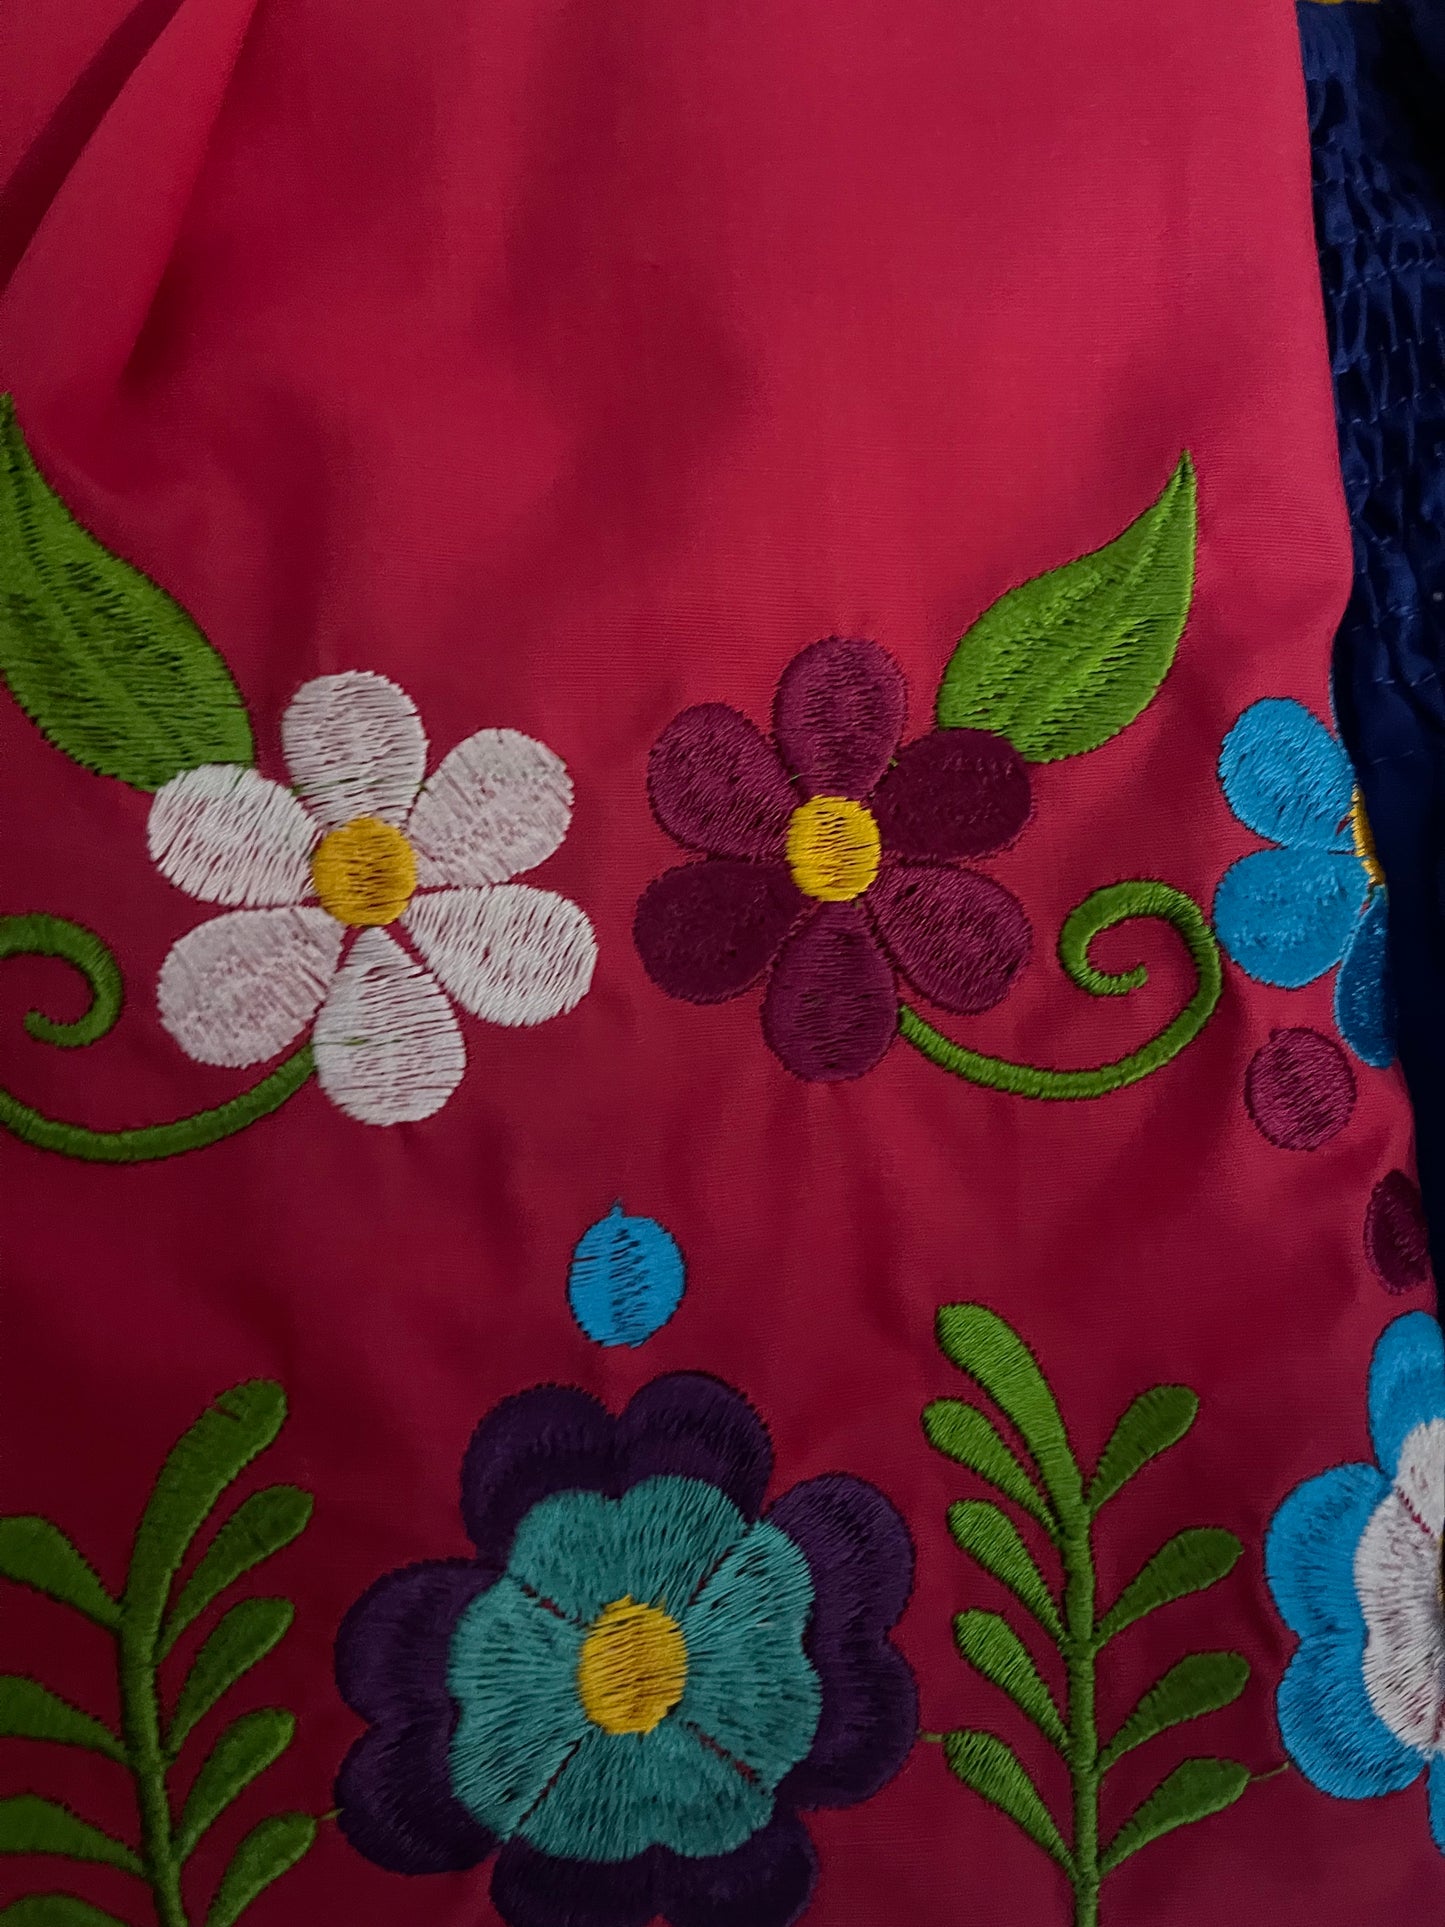 Princesa Embroidery girl Dress